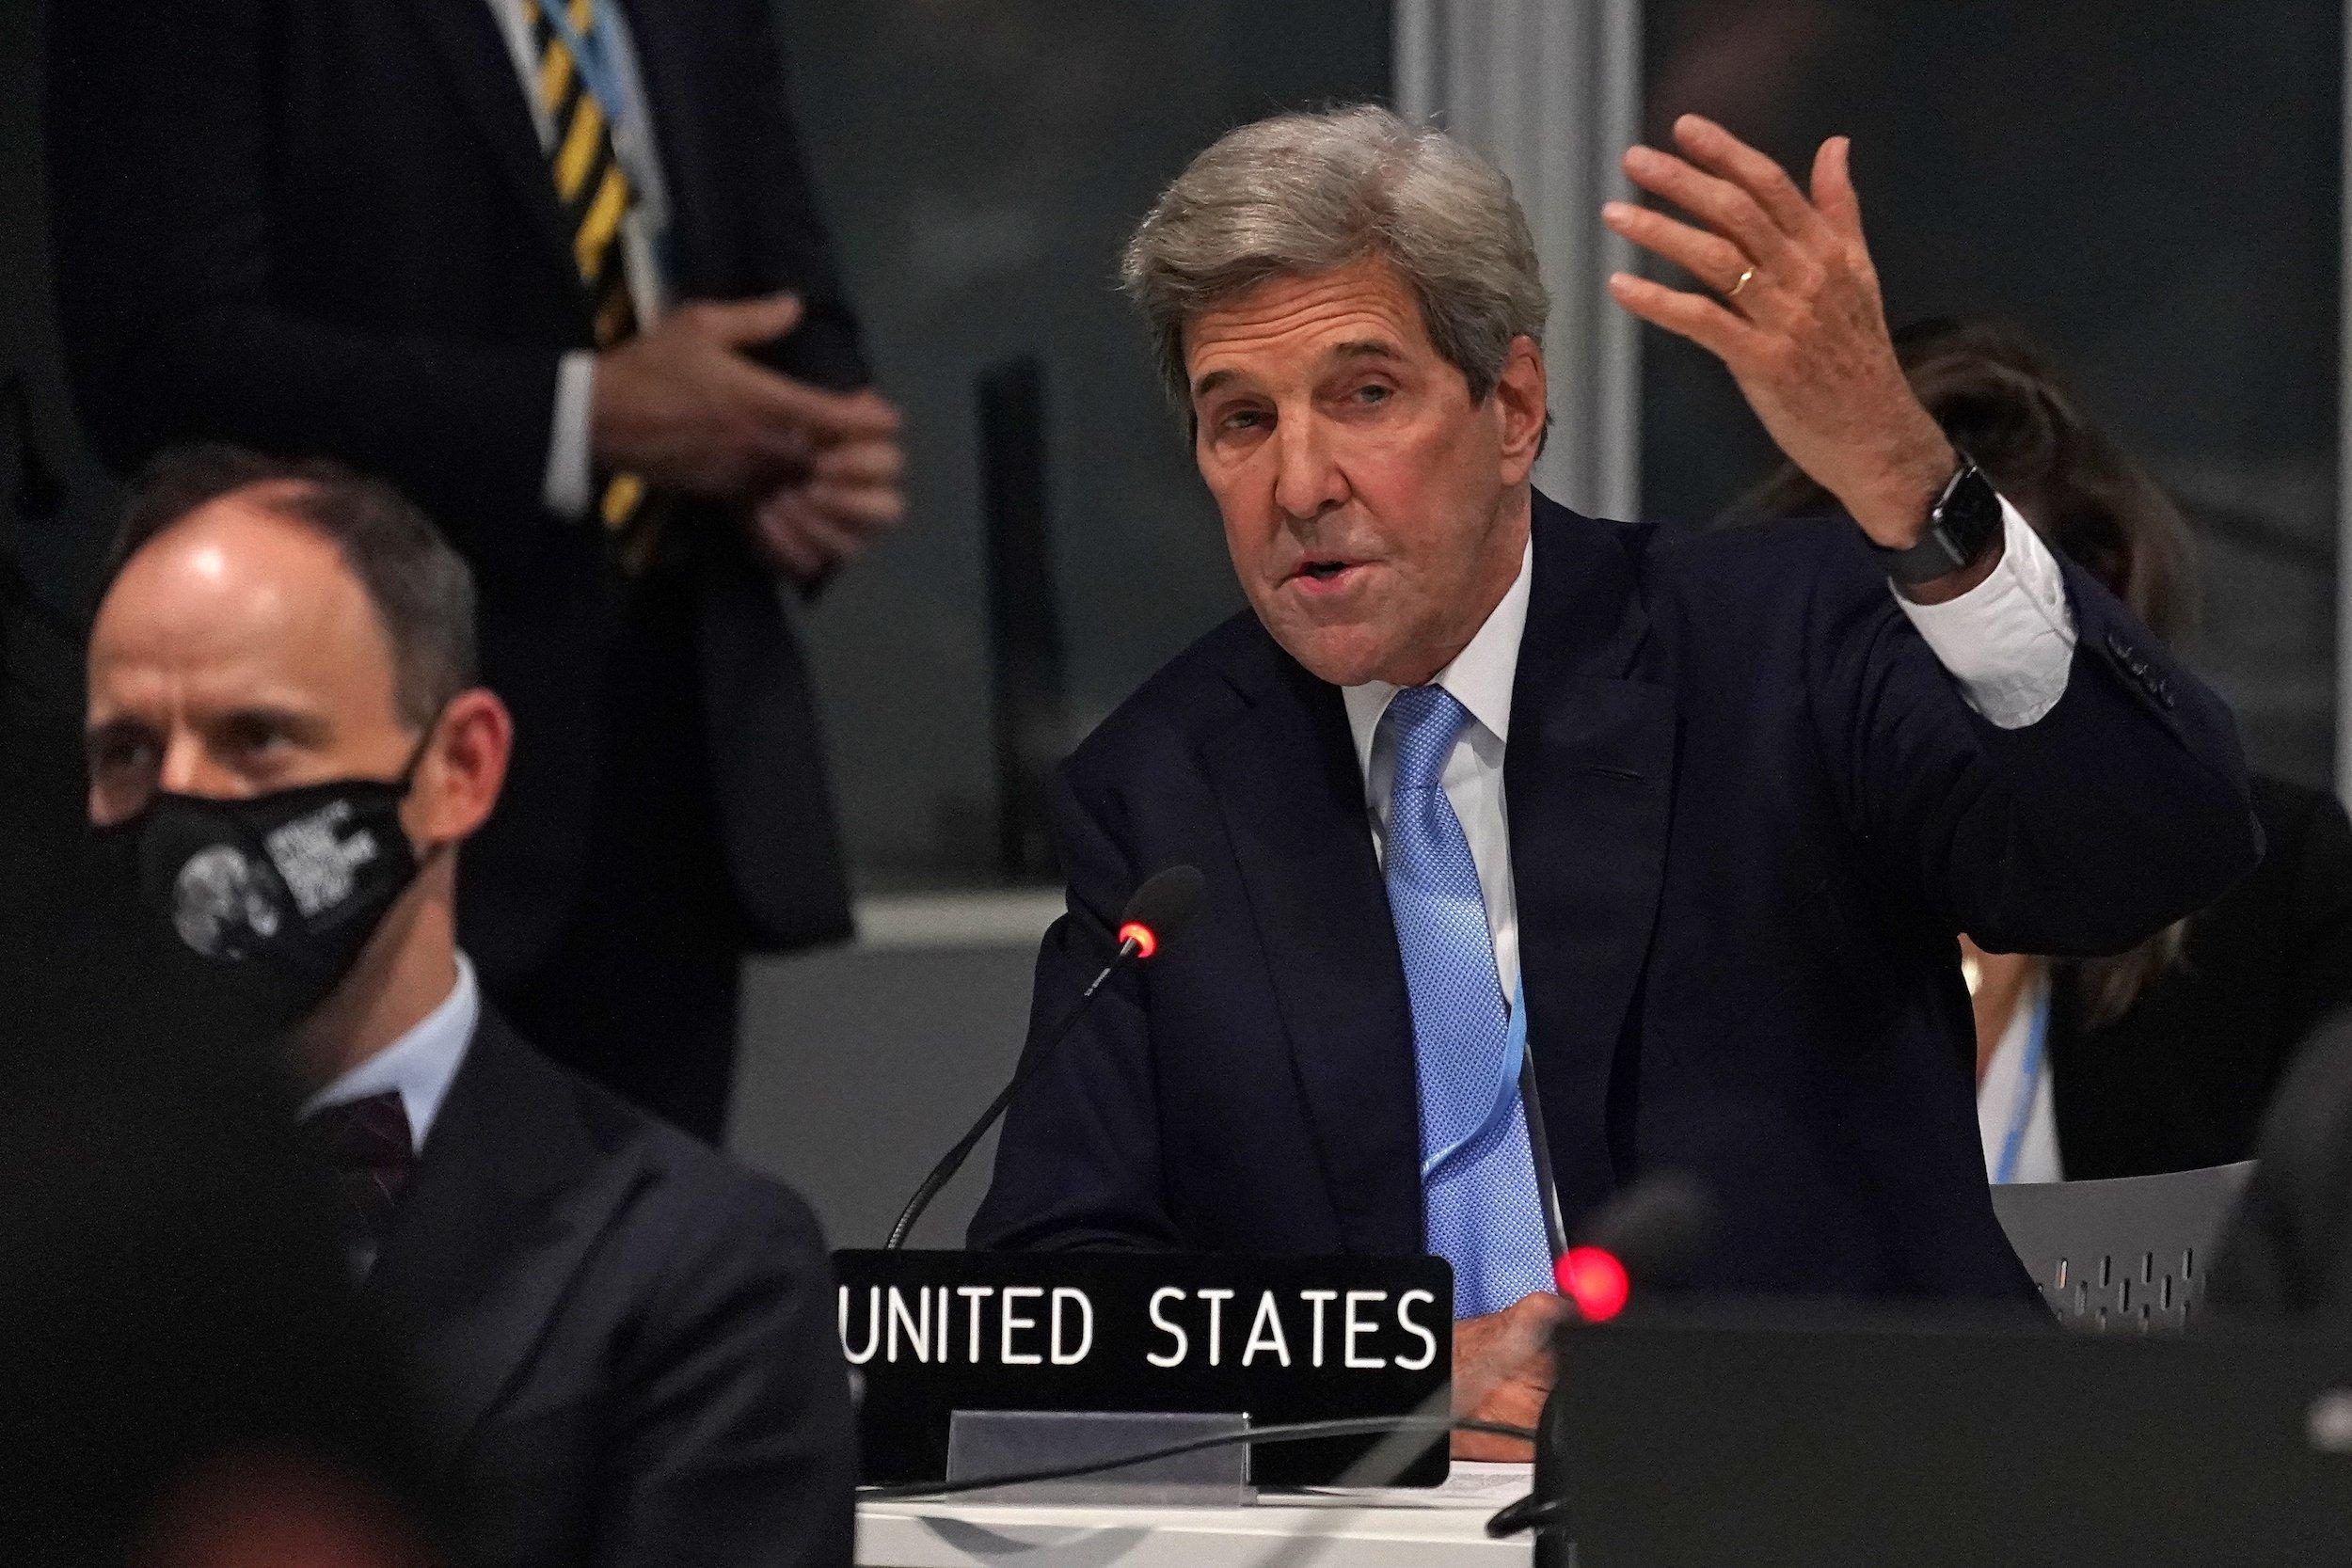 Kerry gestikuliert wild von seinem Sitzplatz in den Reihen der delegierten aus.